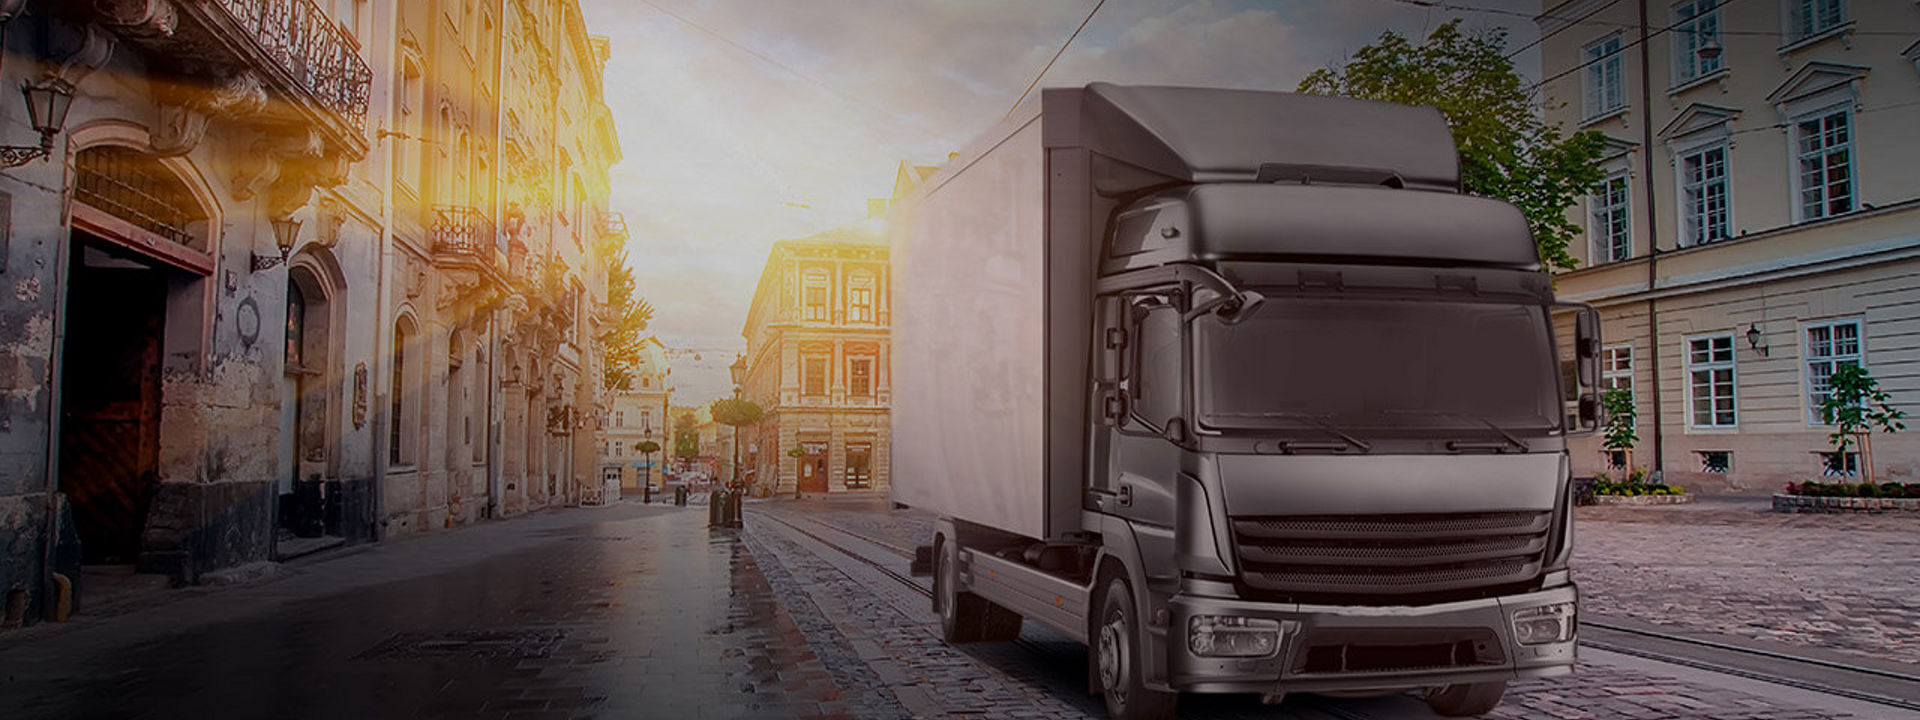 Esta imagen es un camión que utiliza neumáticos Bridgestone de camión ligero y mediano para entregar mercancías en medio de una ciudad.